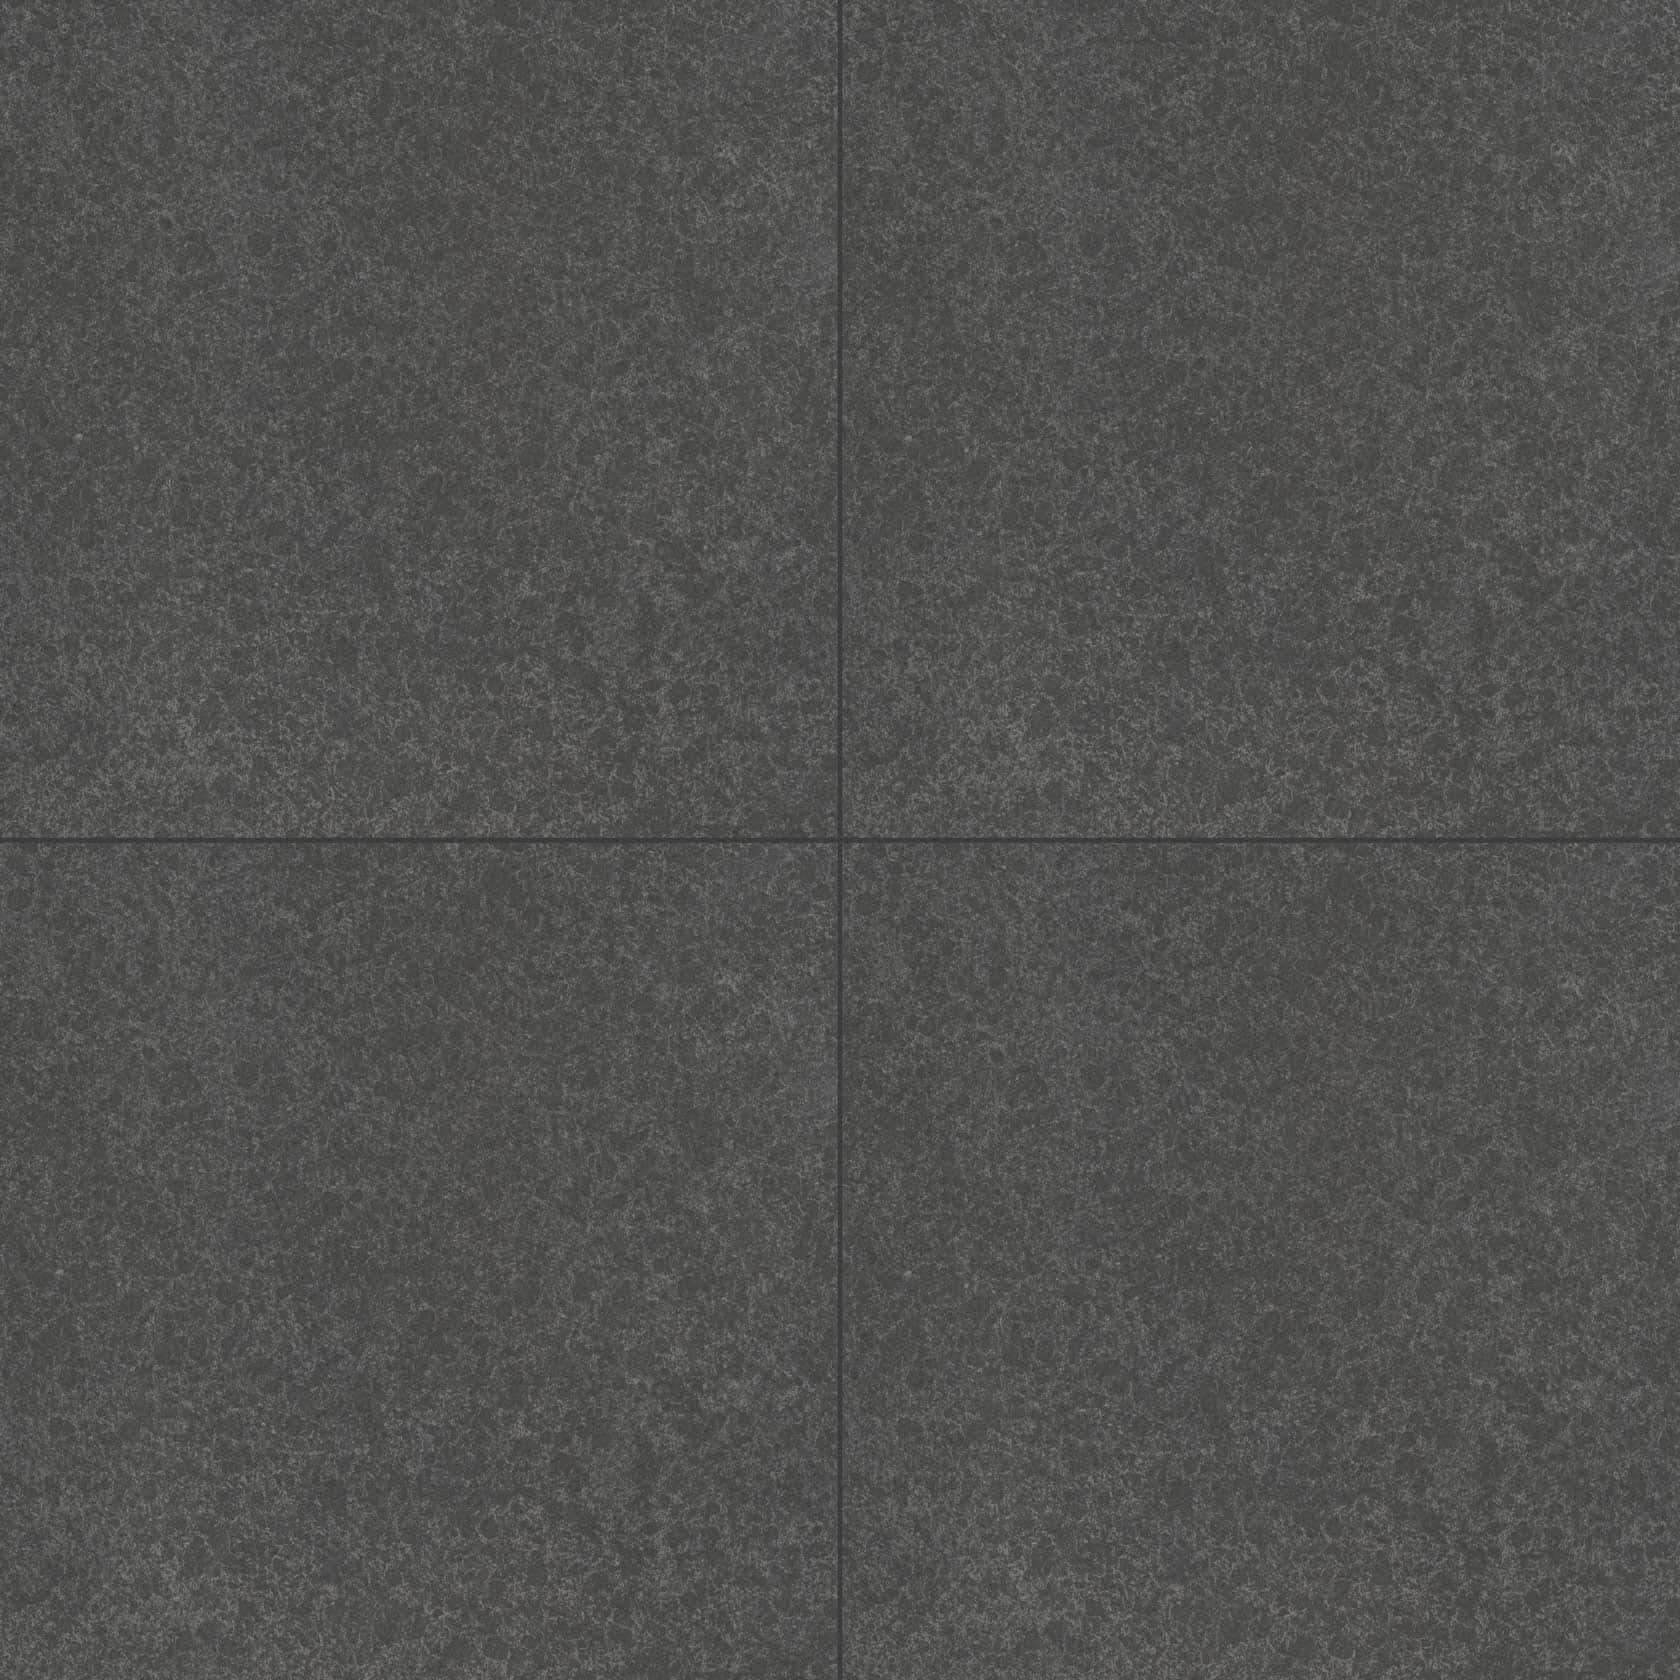 Dark Granite Tile Texture Wallpaper